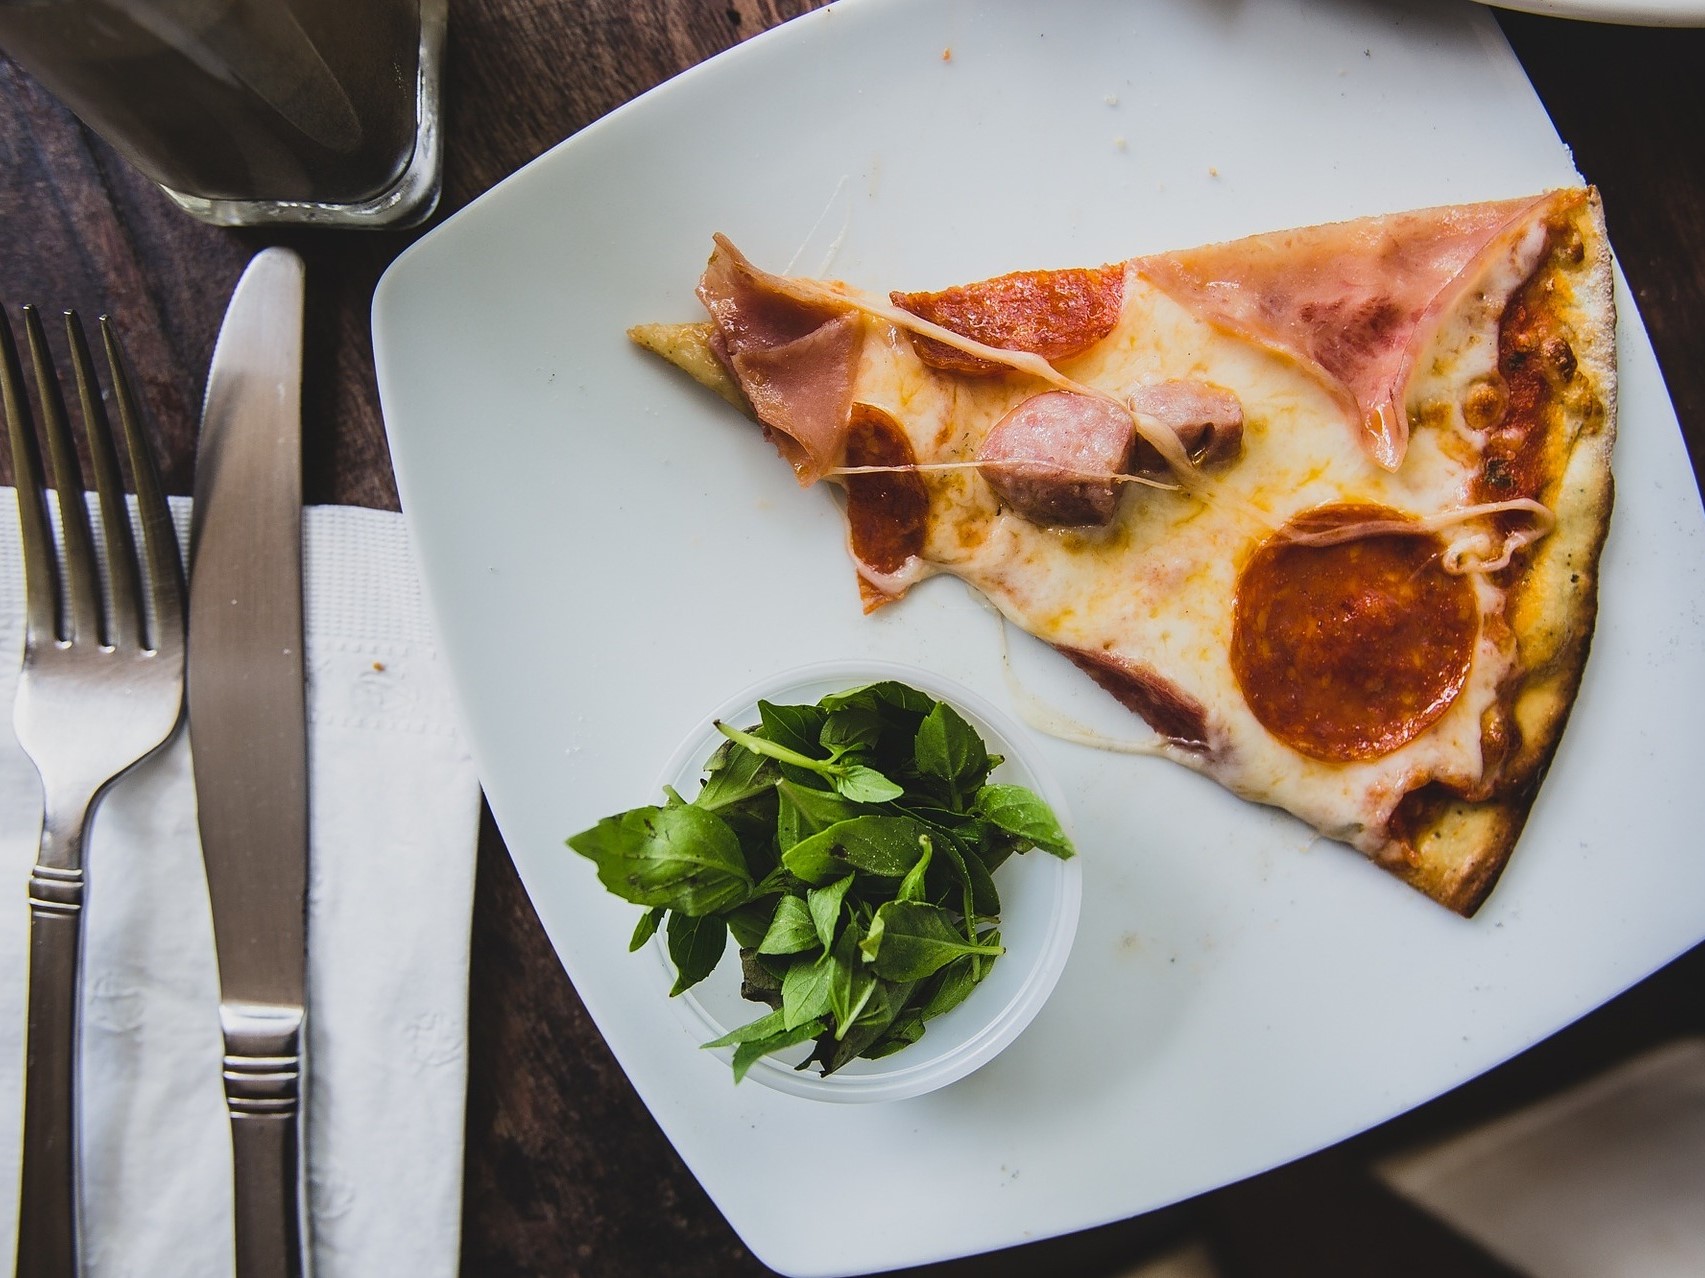 Bijeli četvrtasti tanjur na kojem se nalazi trokut pizze i začinsko bilje u maloj posudi. S lijeve strane tanjura je ubrus s nožem i vilicom te čaša.